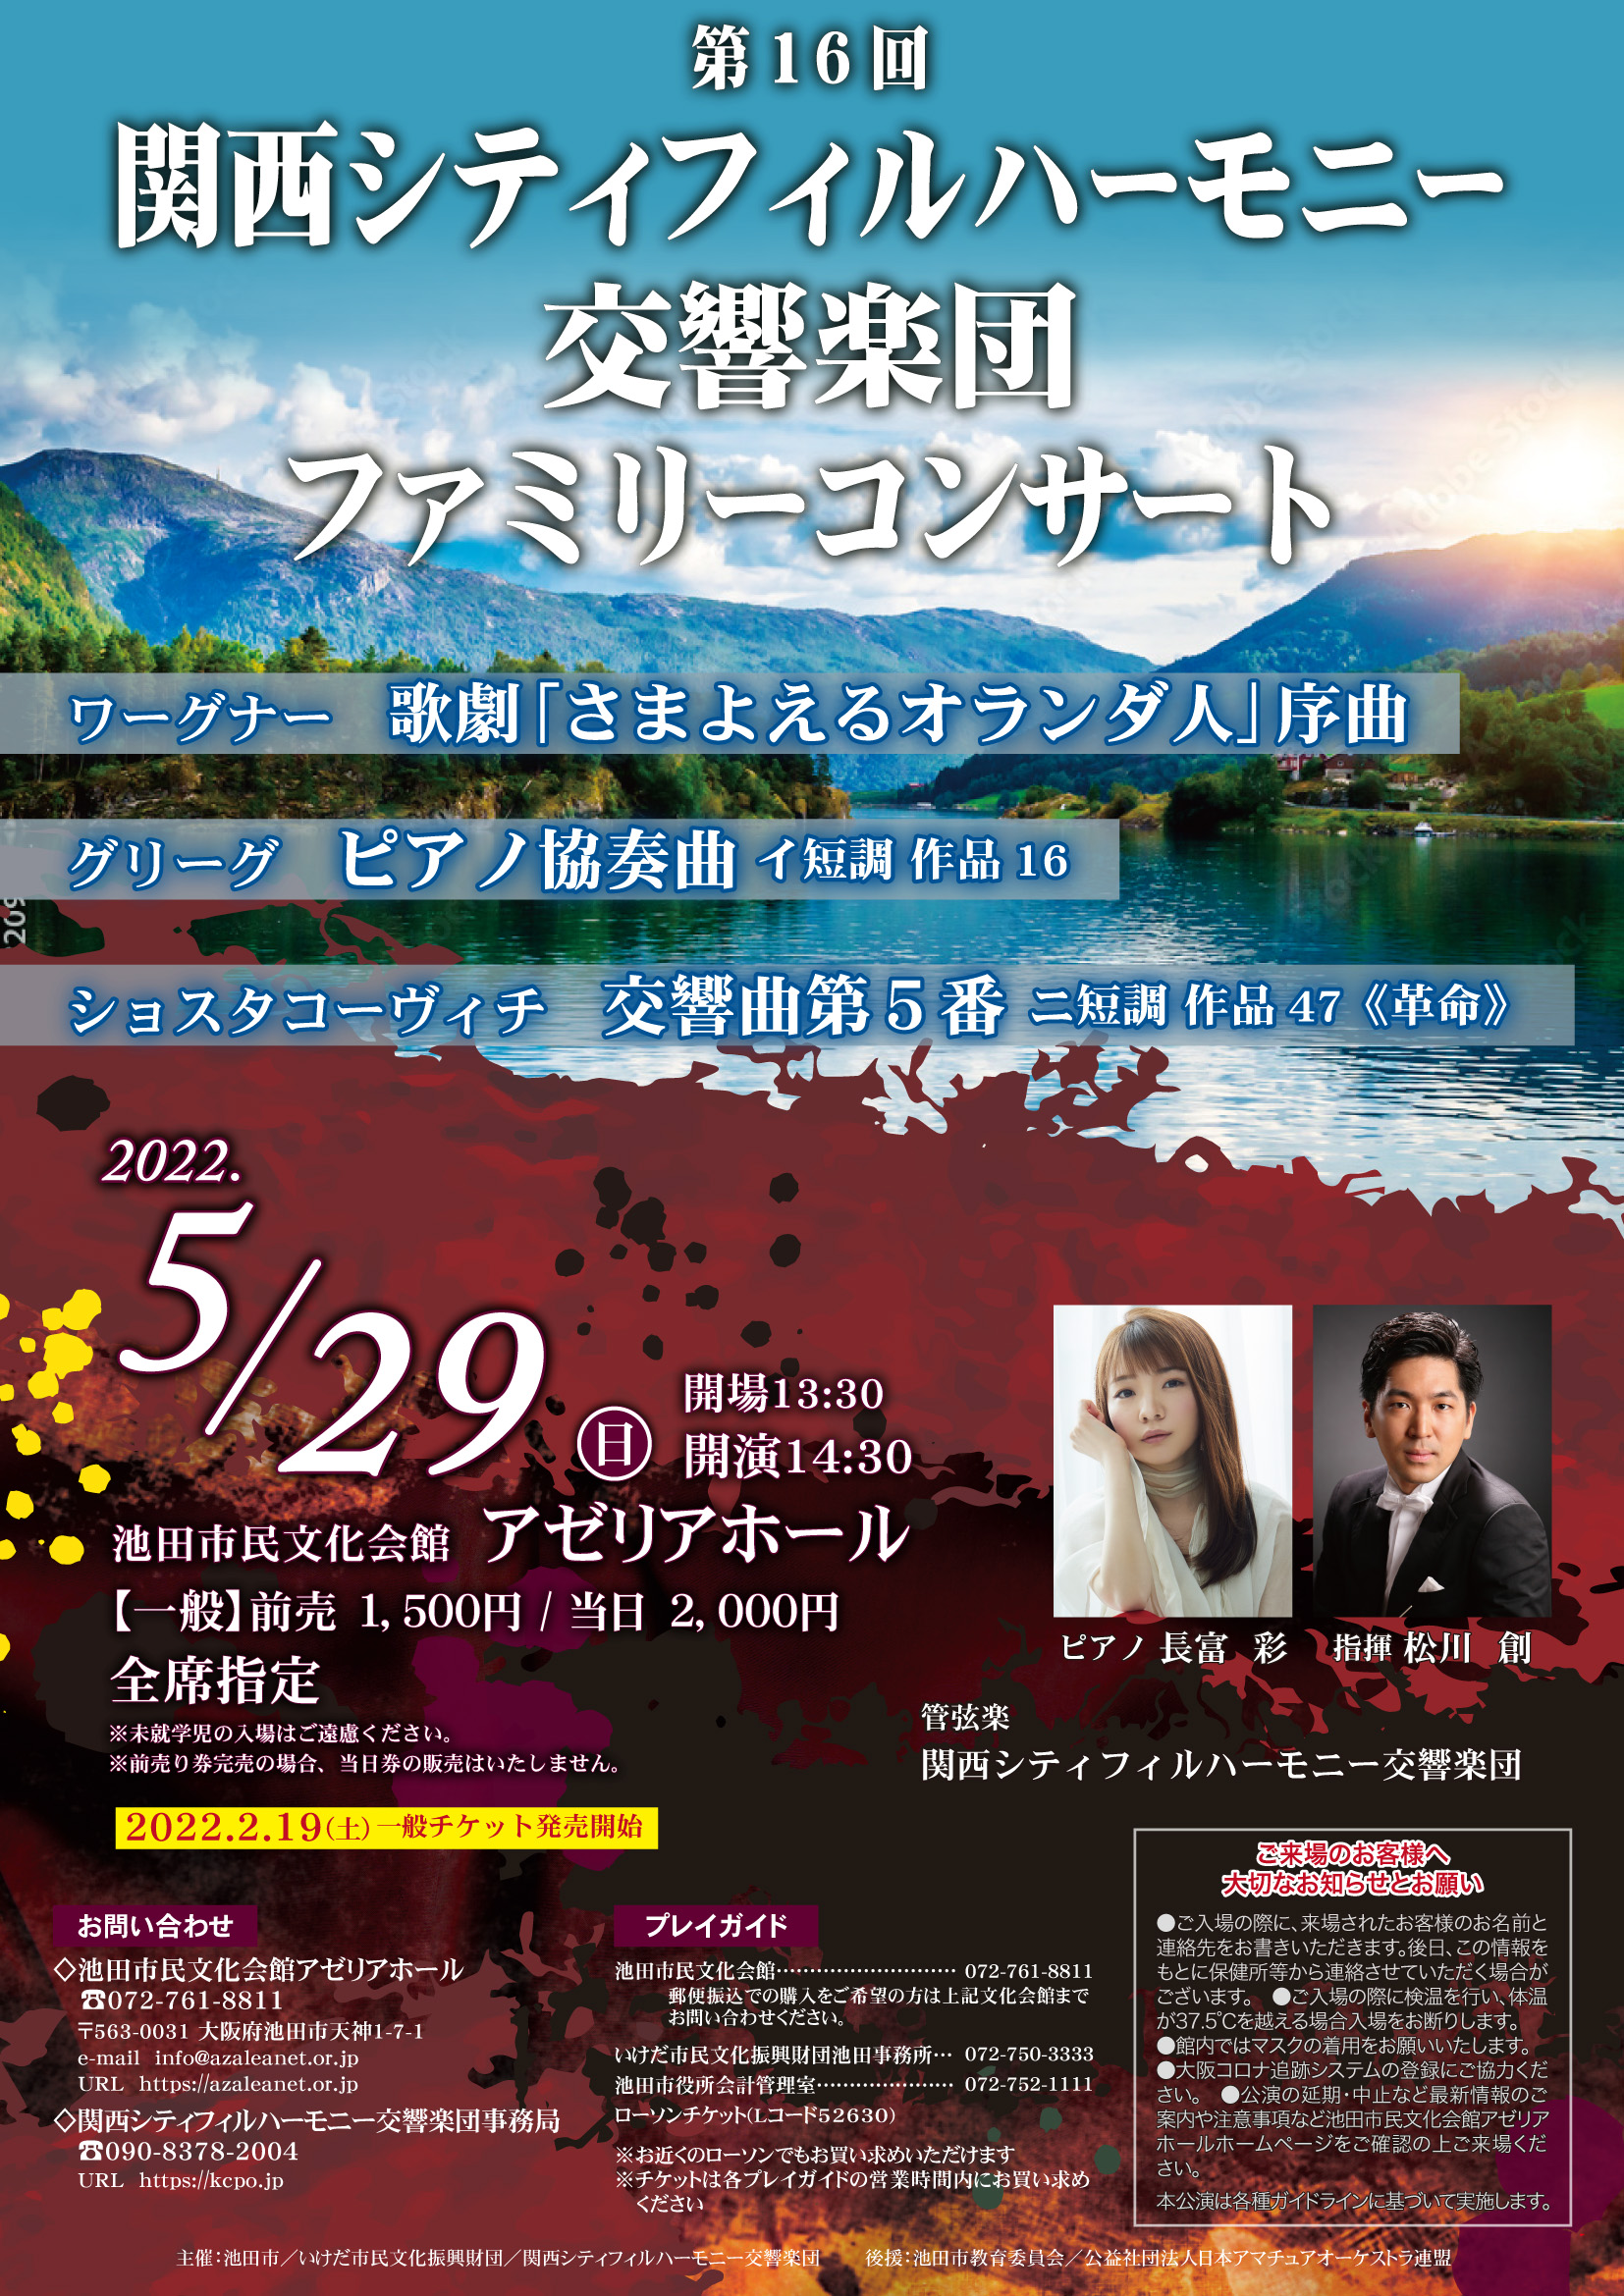 関西シティフィルハーモニー交響楽団第16回ファミリーコンサートのフライヤー画像